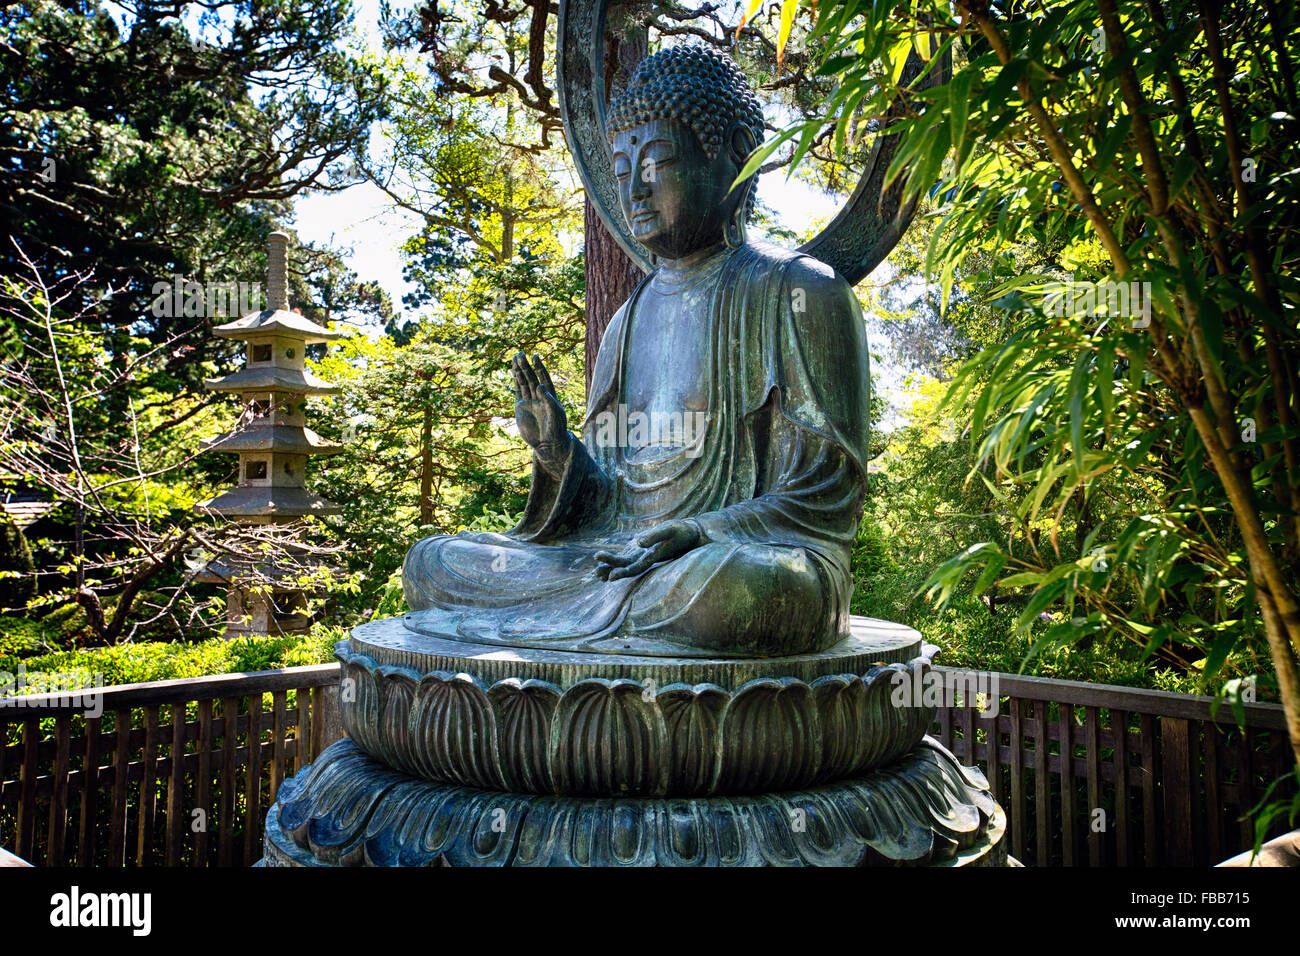 Niedrigen Winkel Ansicht eines sitzenden Bronze-Buddha-Statue, Japanese Tea Garden, San Francisco, Kalifornien Stockfoto